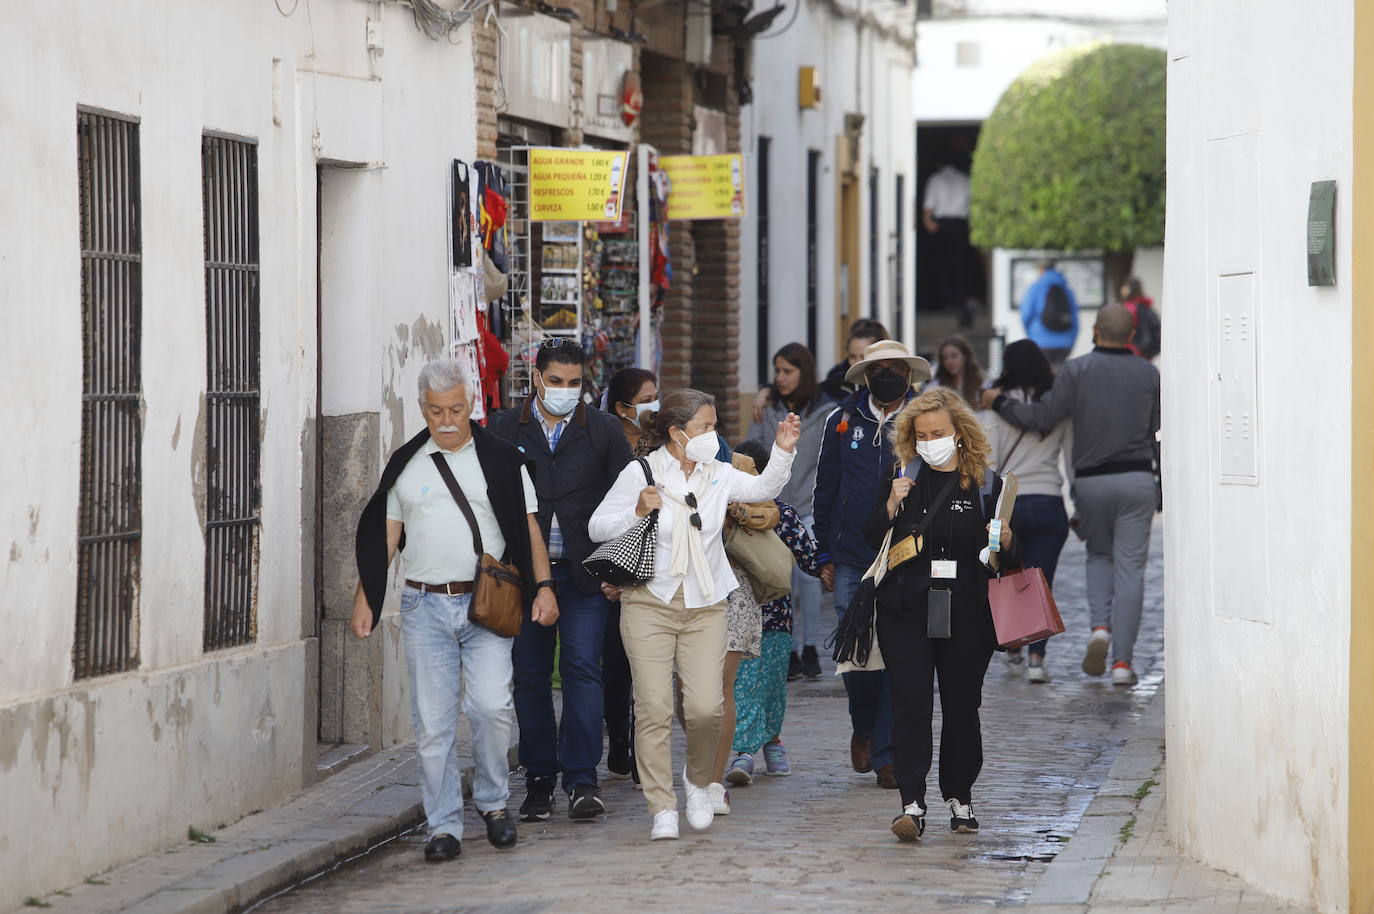 El ambiente turístico el Miércoles Santo en Córdoba, en imágenes